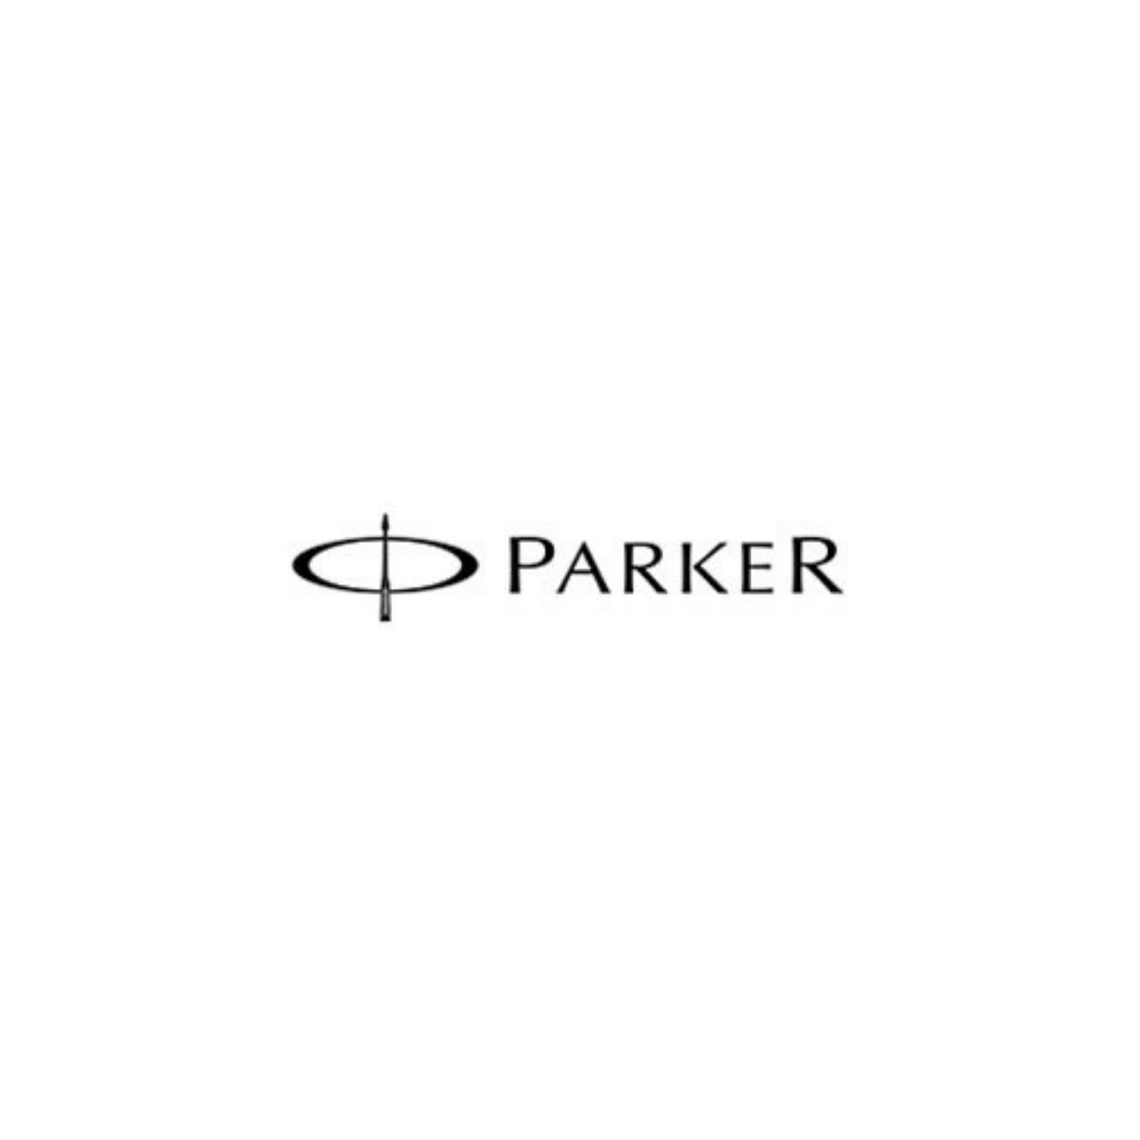 ParkerSklep.com